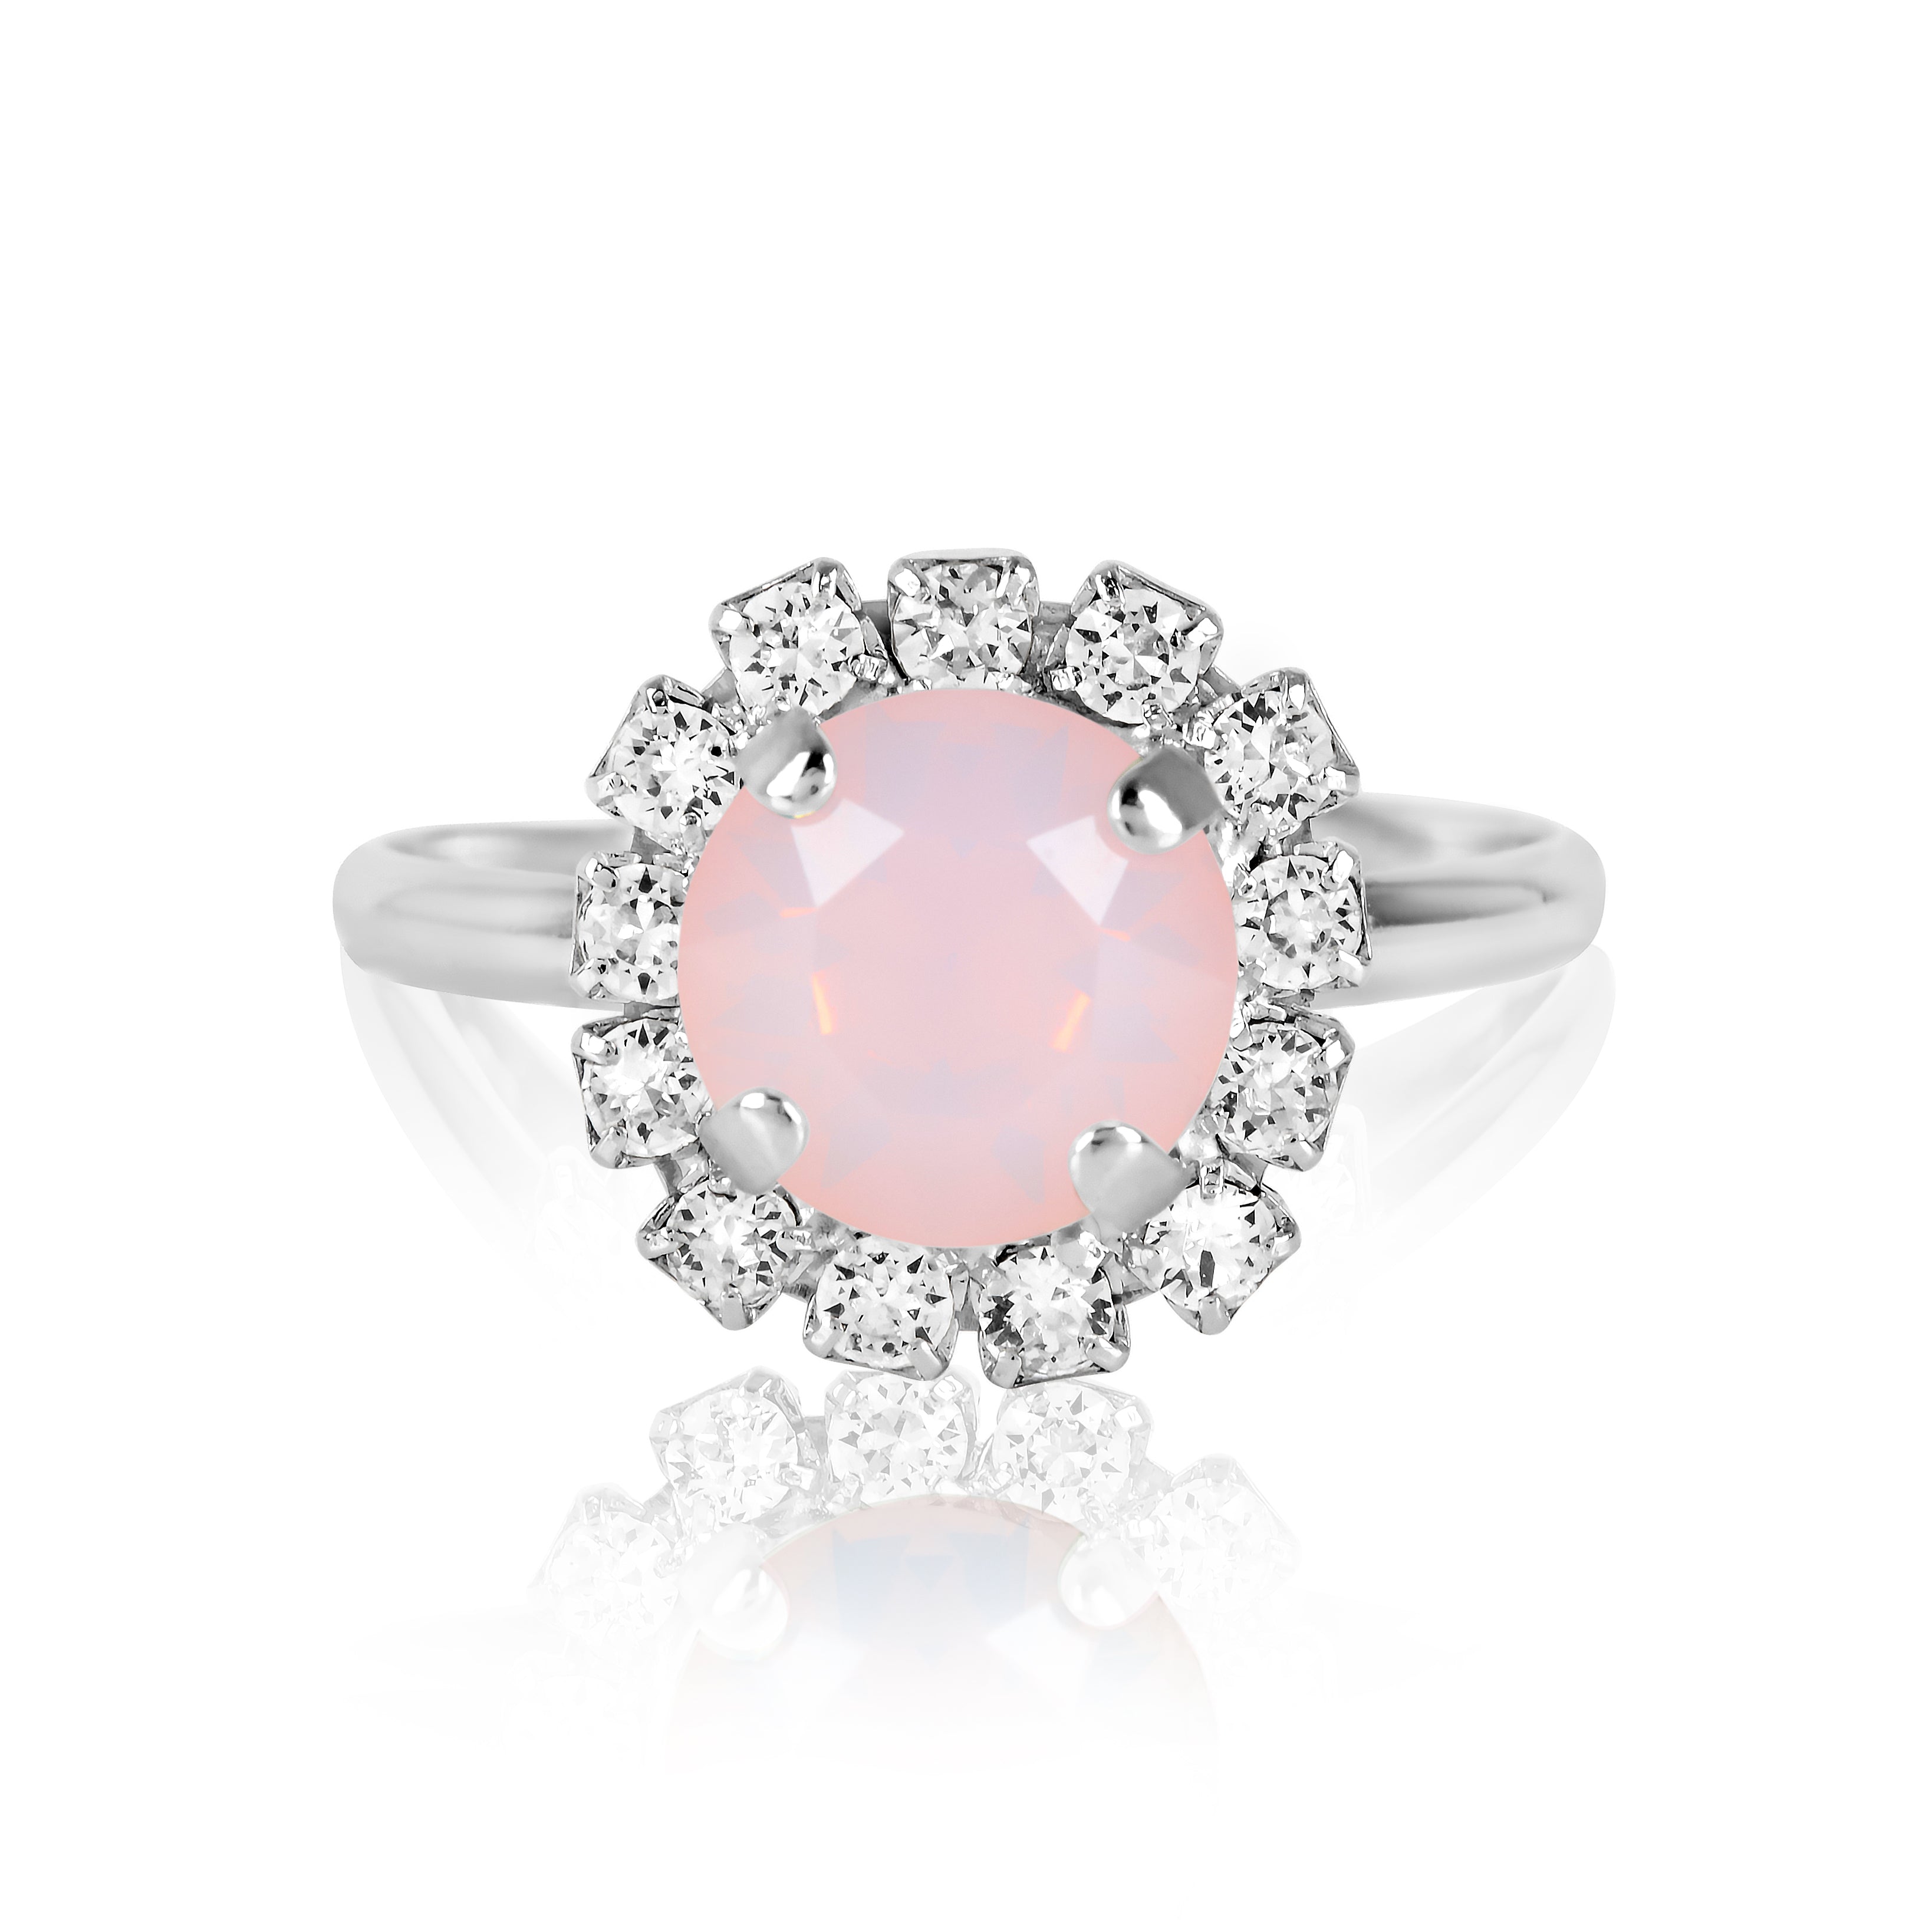 Halo Ring, Silver Ring, Dress Ring, Cocktail Ring, Statement Ring, Wedding Ring, Going Out Ring, Swarovski Ring, Opal Ring, Beautiful Ring, Pink Ring